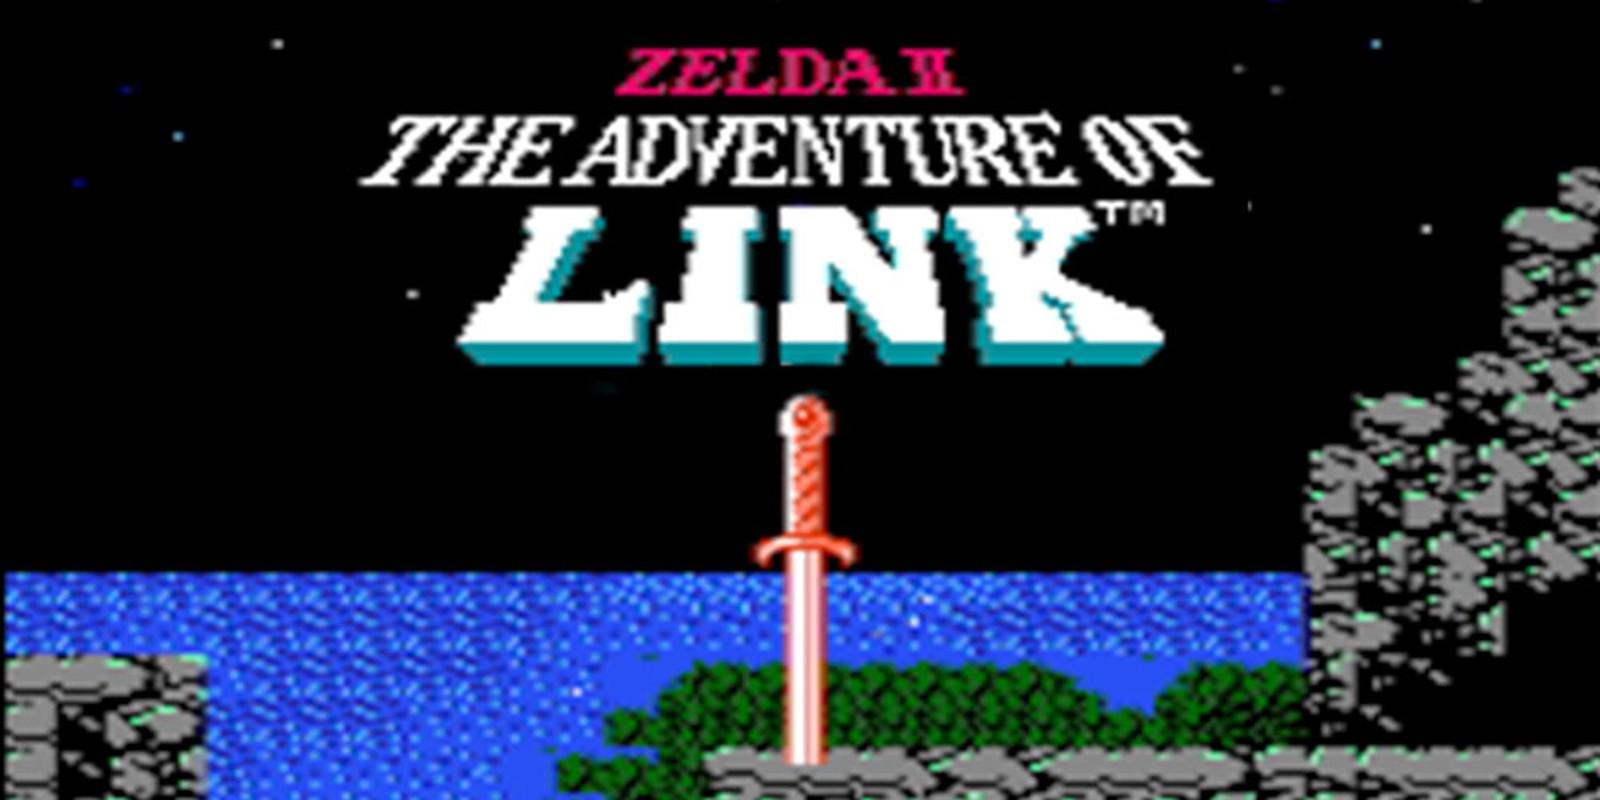 Zelda 2, adventure of link